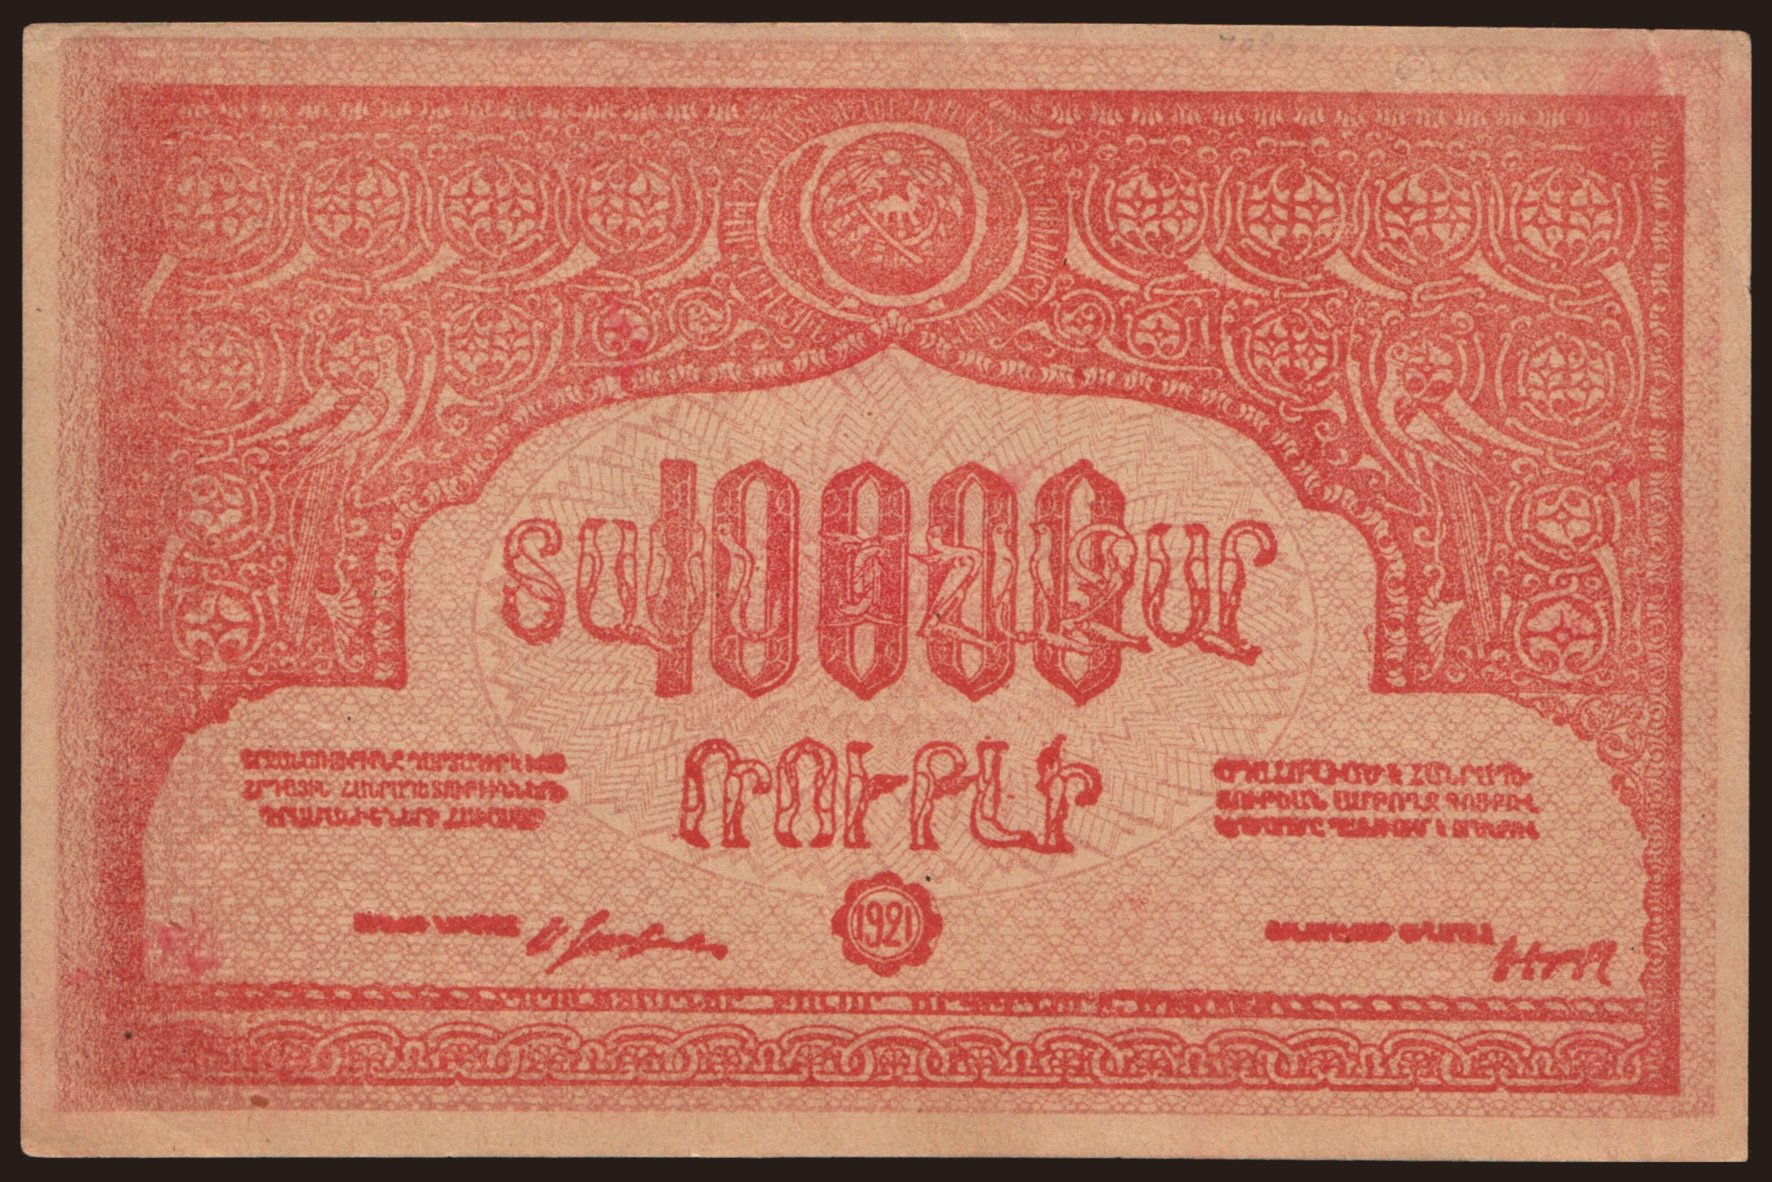 Armenia, 10.000 rubel, 1921